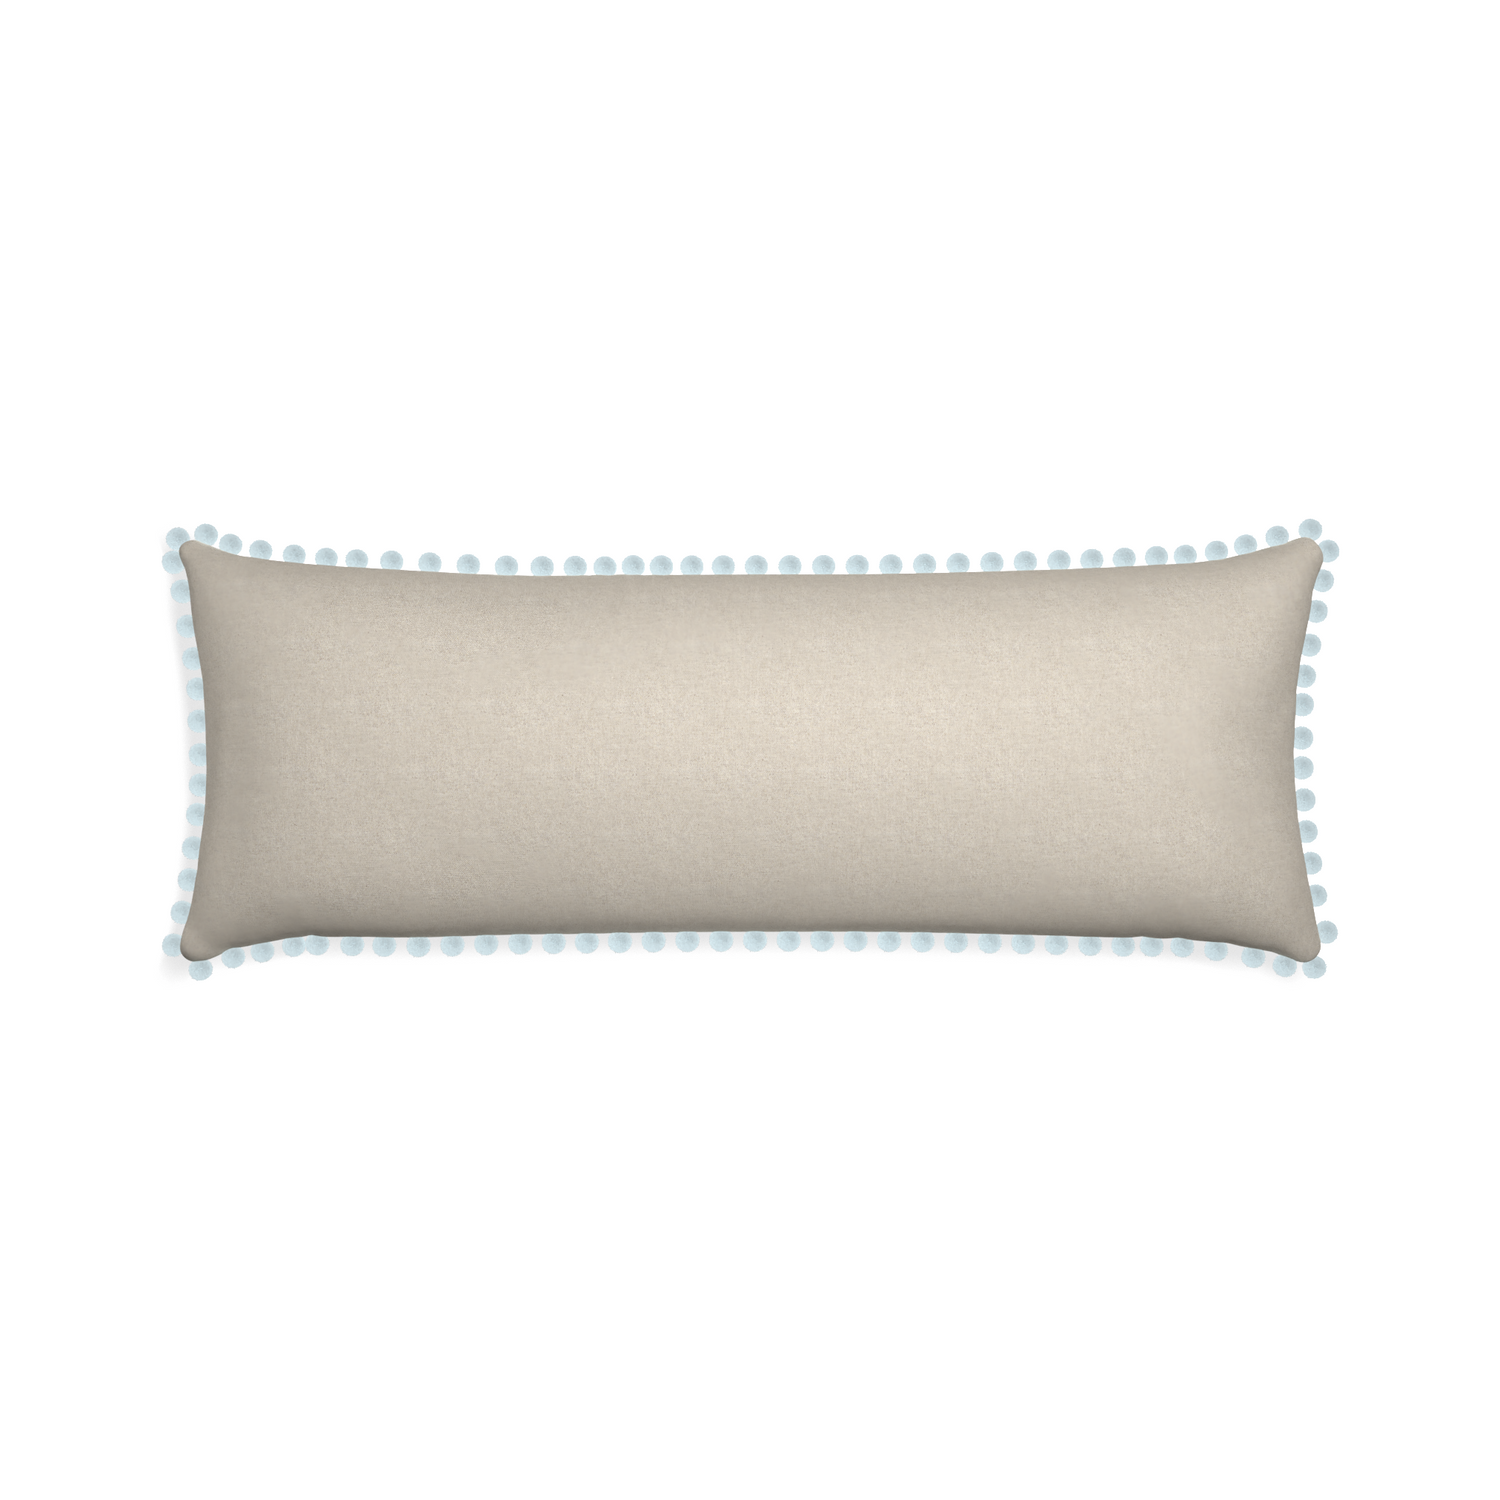 Xl-lumbar oat custom pillow with powder pom pom on white background